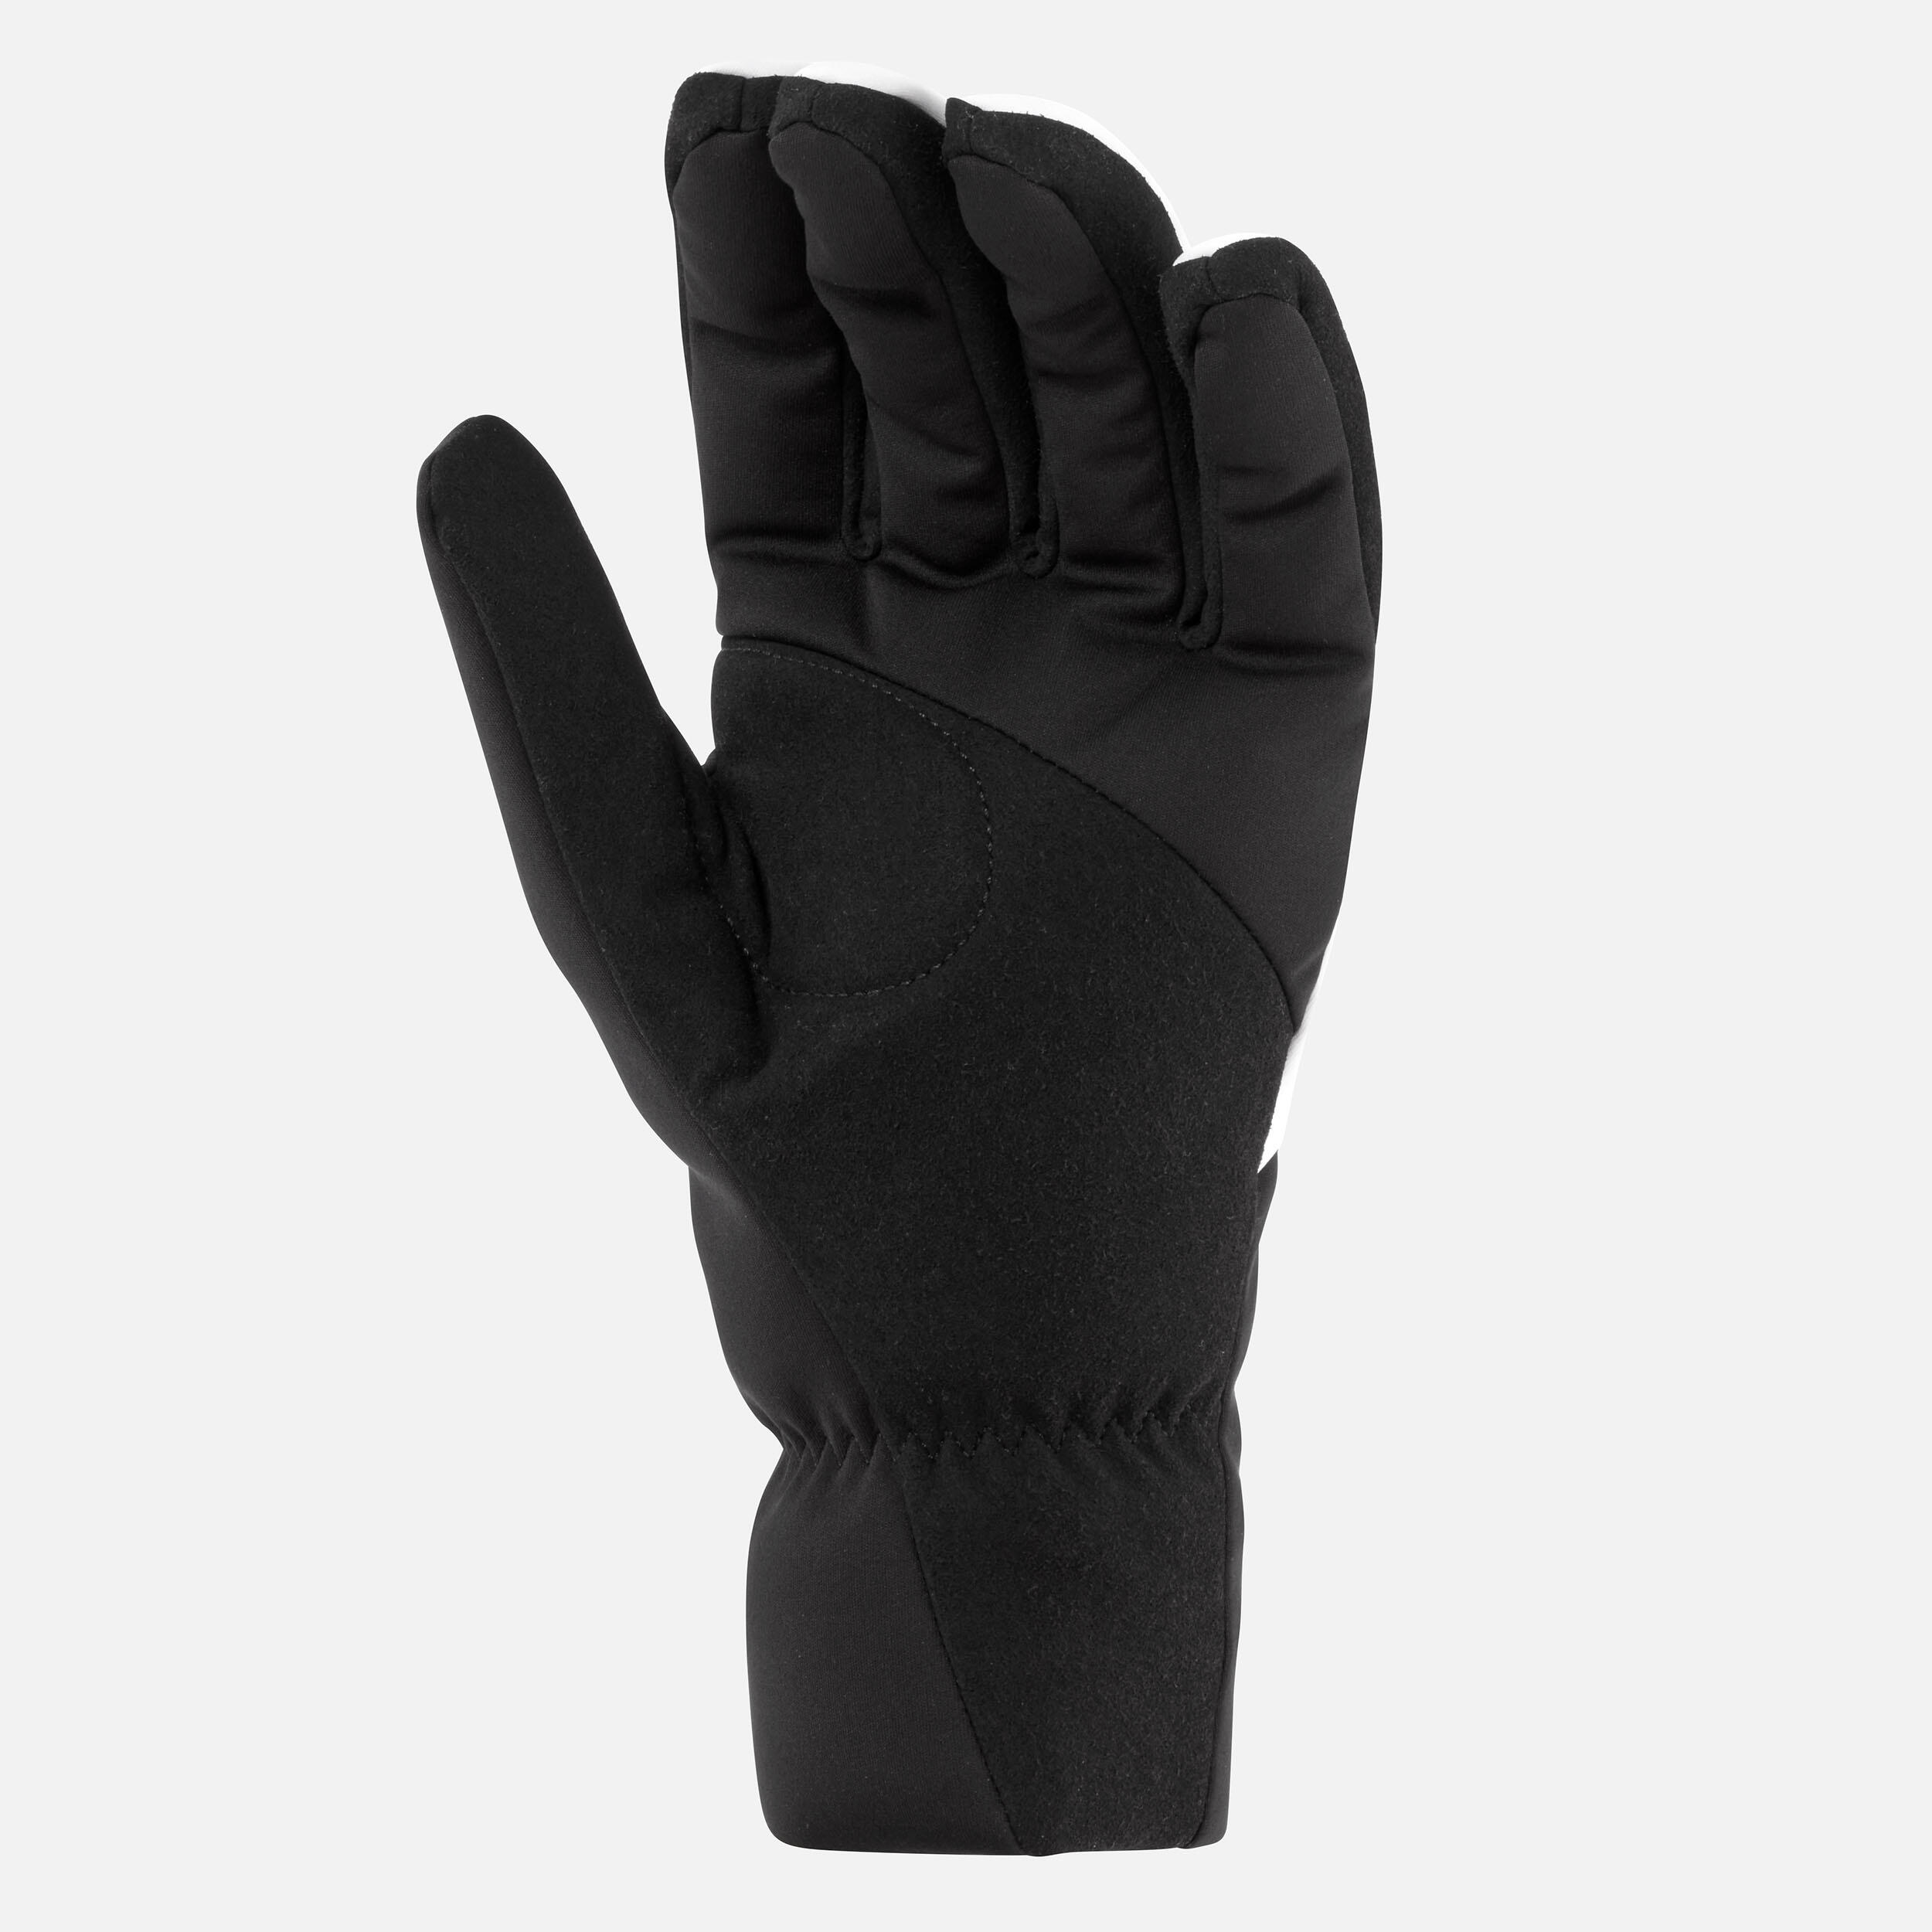 Women's Cross-Country Ski Gloves 100 5/9